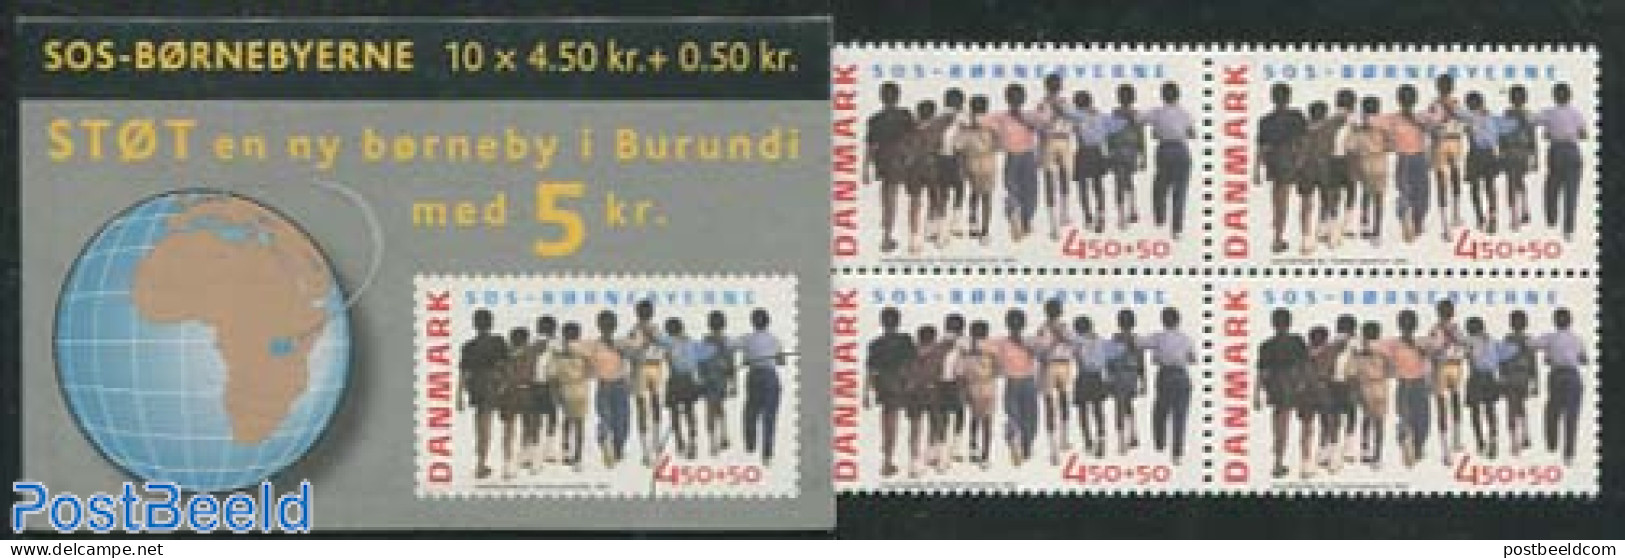 Denmark 2005 SOS Childrens Villages Booklet, Mint NH, Stamp Booklets - Unused Stamps